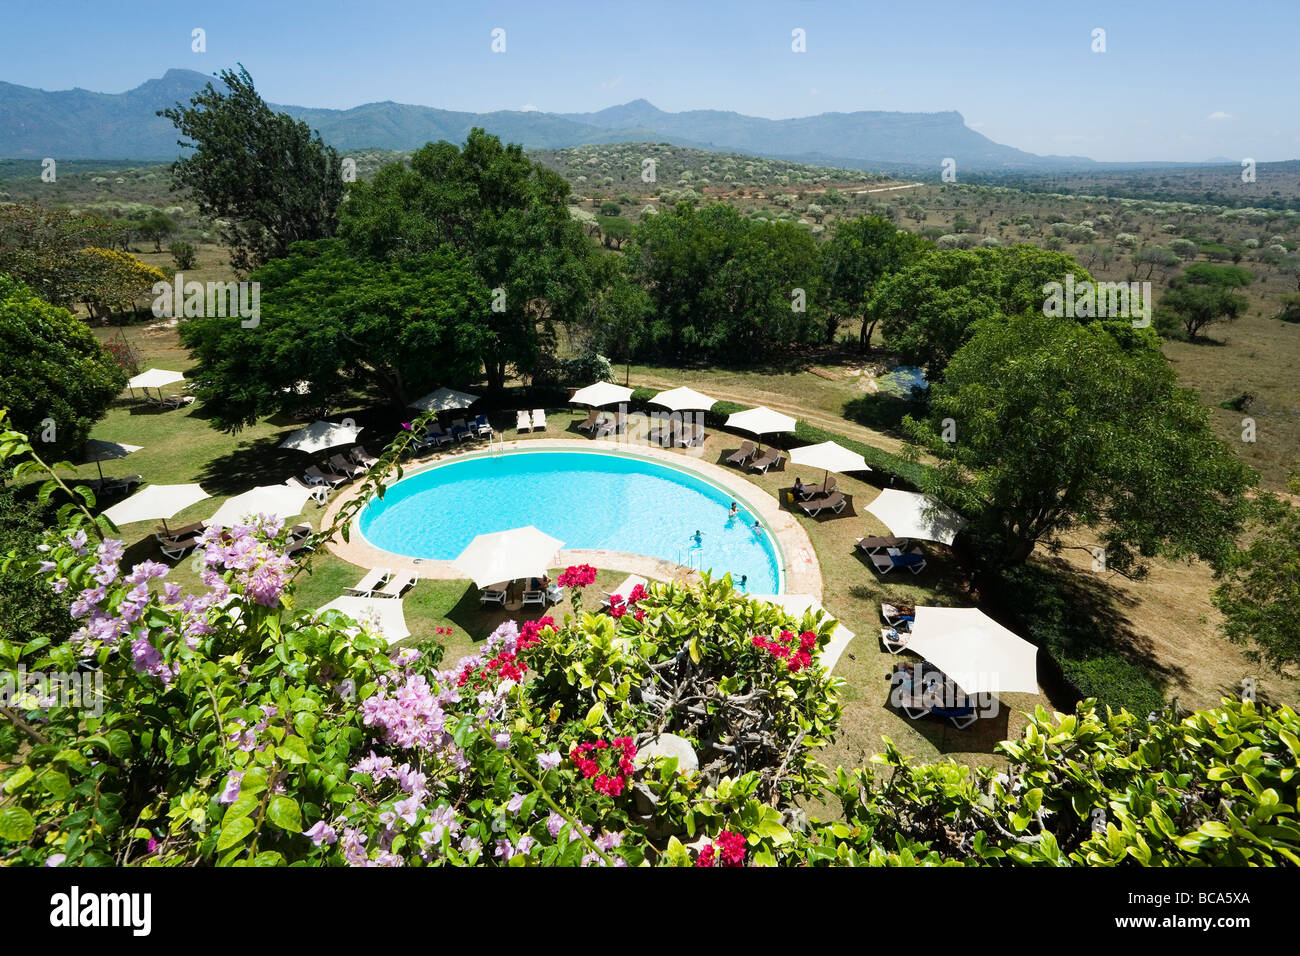 View over swimming pool of Taita Hills Lodge, Taita hills in background, Coast, Kenya Stock Photo